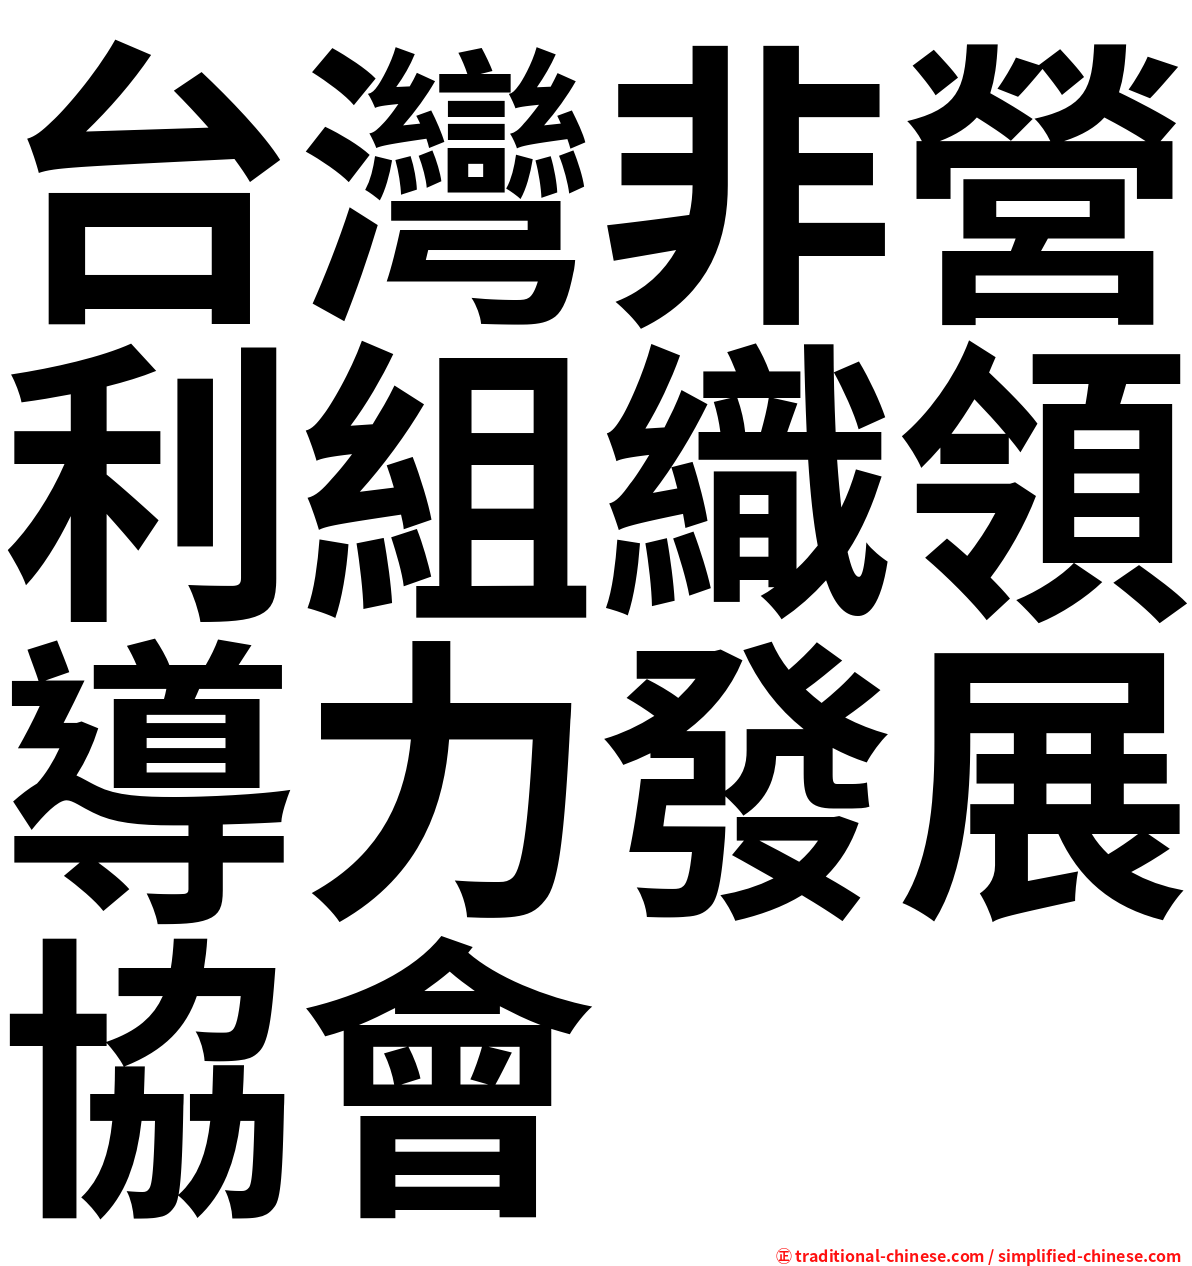 台灣非營利組織領導力發展協會